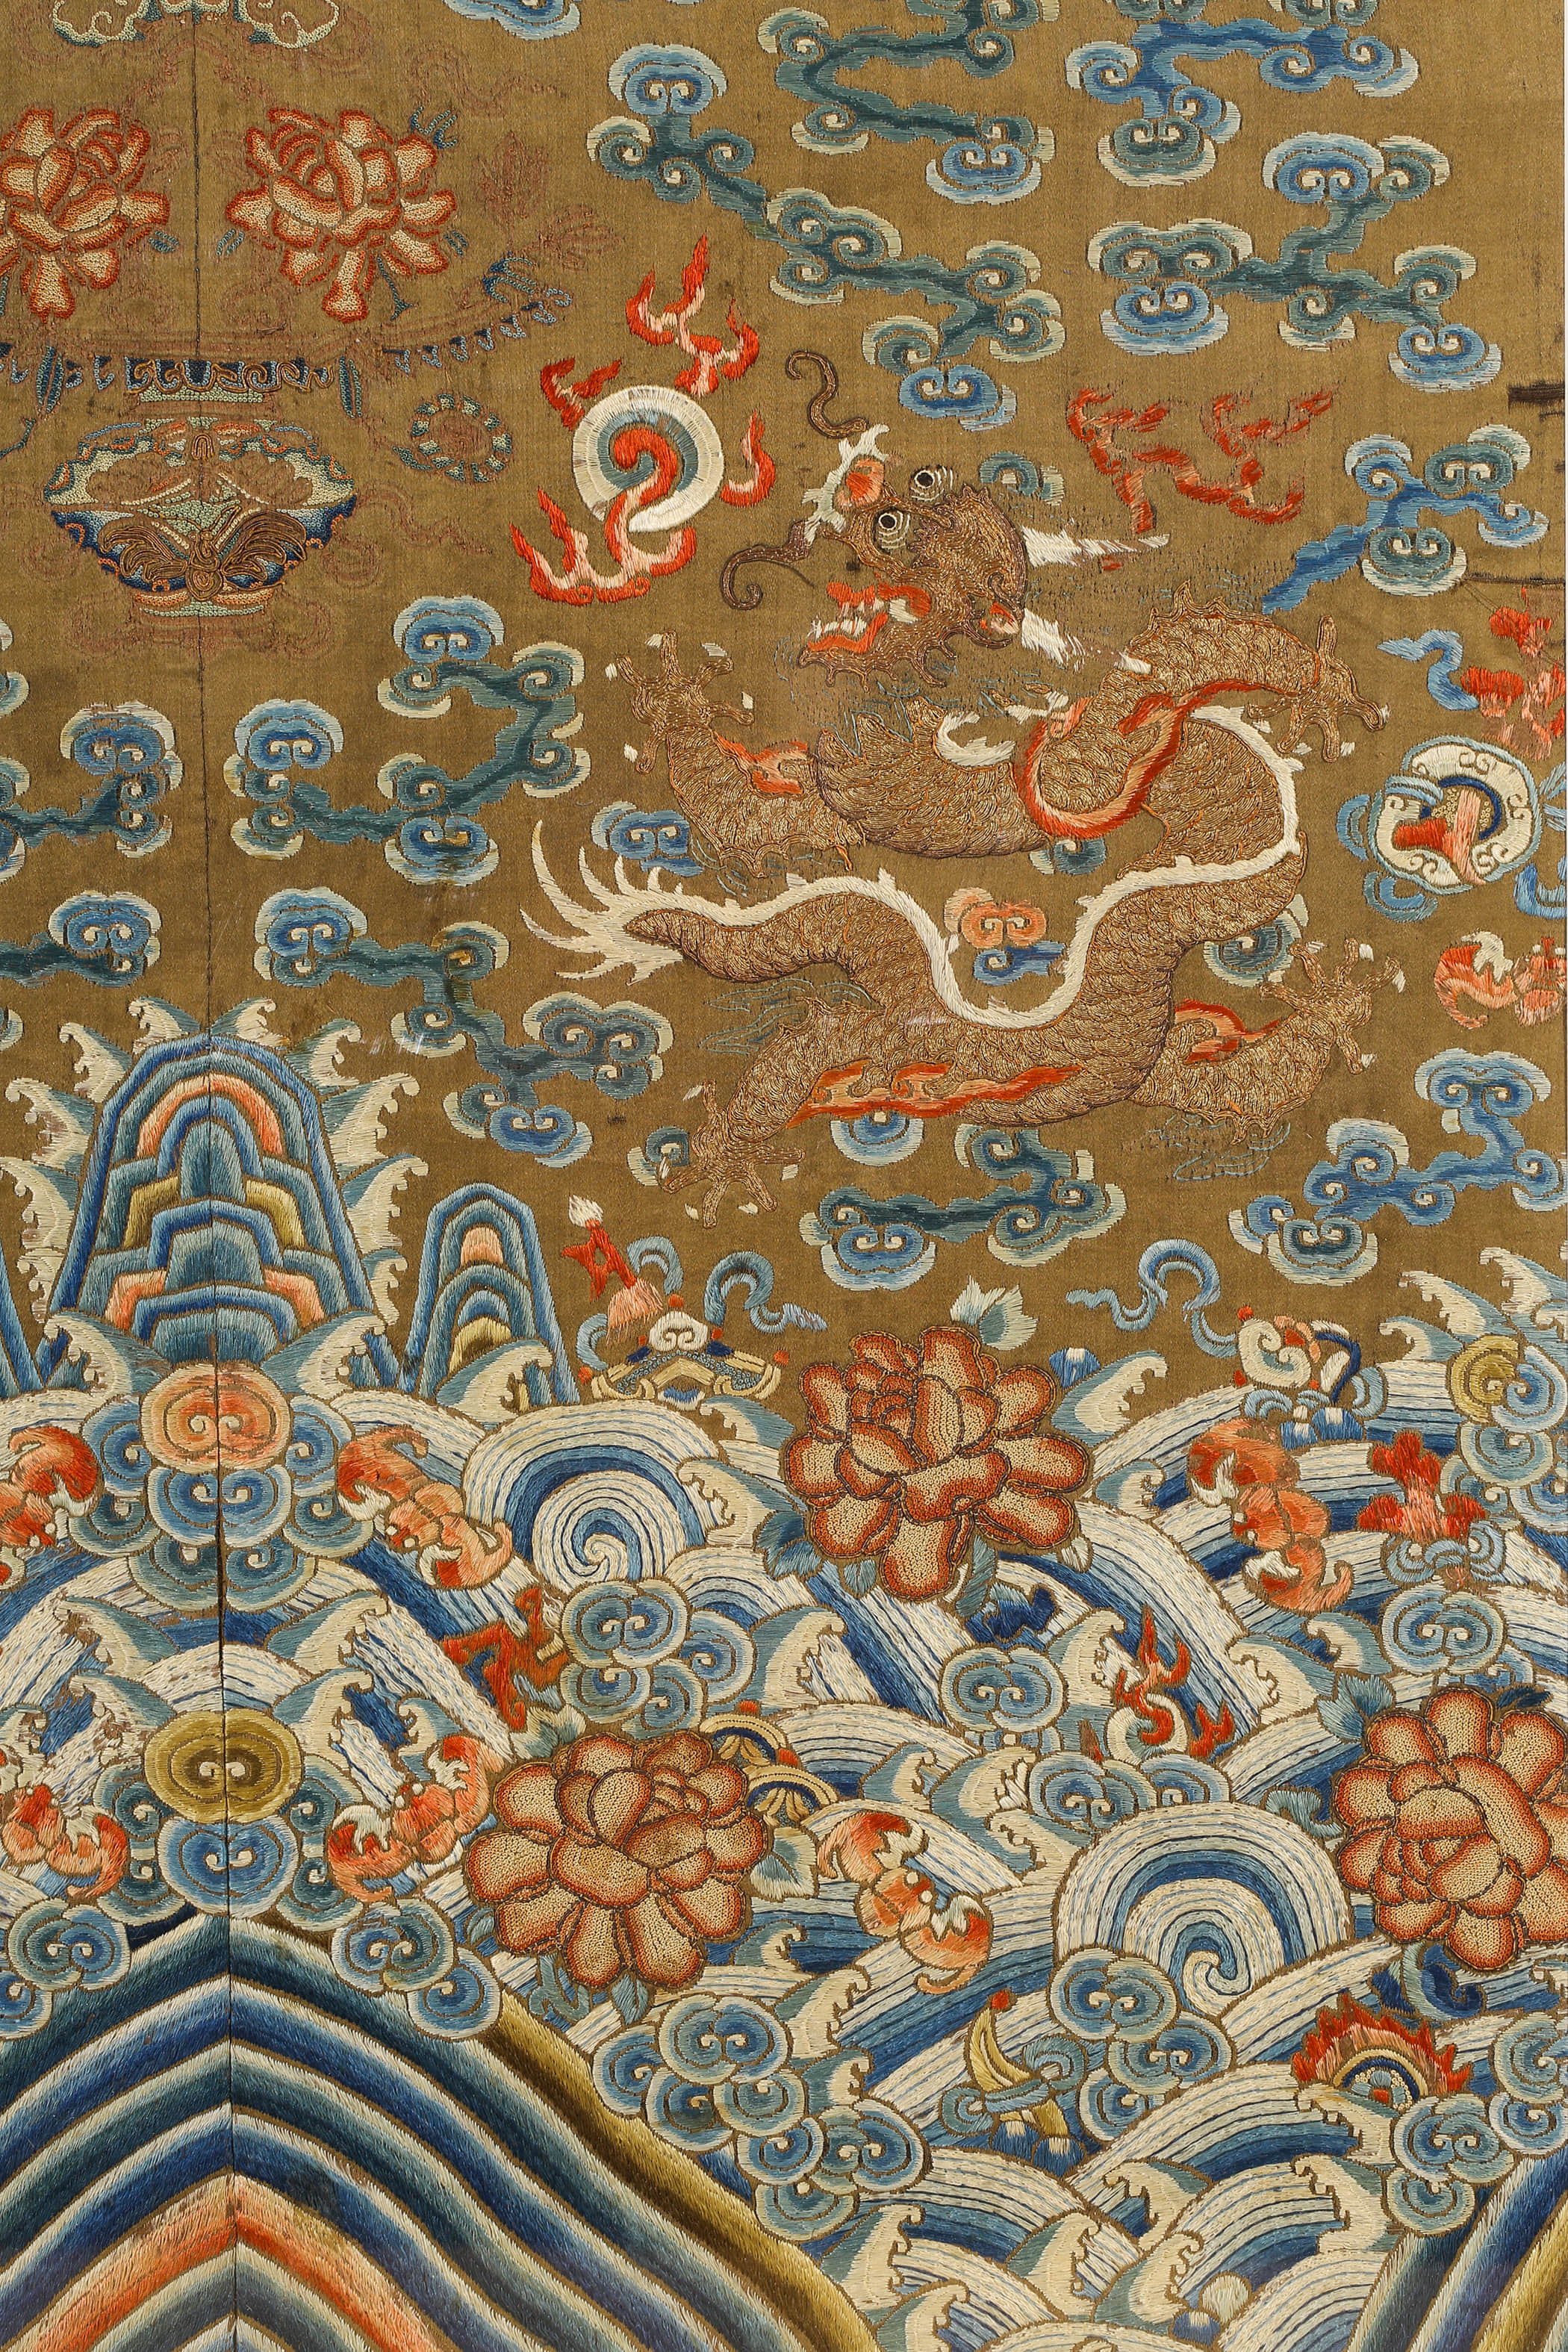 是一件清代晚期蜀绣的龙袍衣料的裁片,盘金绣工艺绣五爪金龙三,正龙一